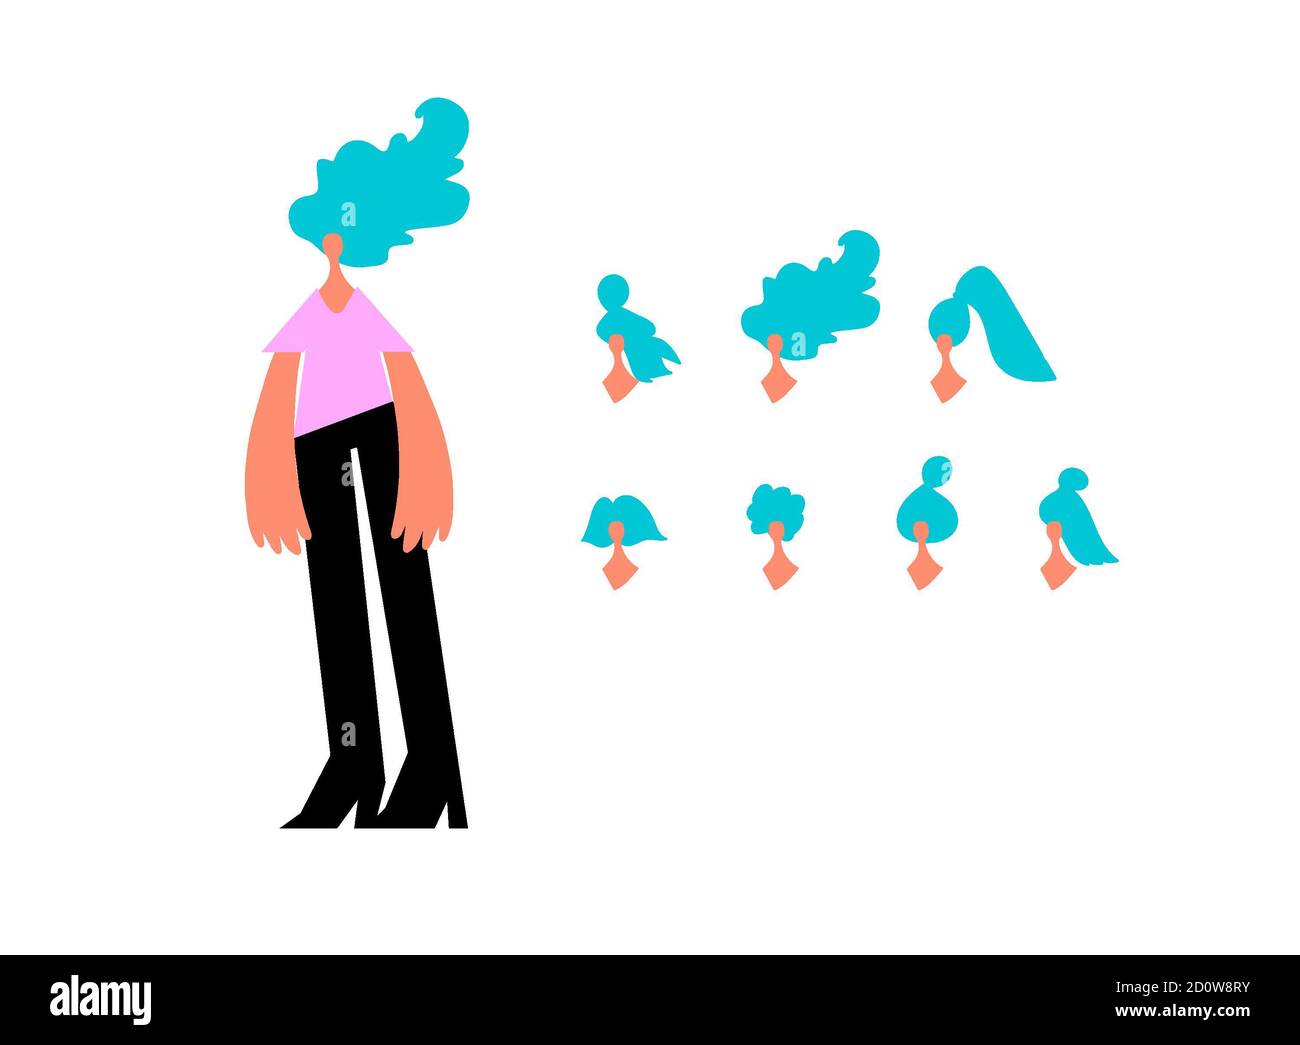 Cartoon Vektor Illustration von Frauen Charakter Kopf Avatare mit verschiedenen Haarschnitten gesetzt. Klassische trendige Frisur, lockiges Haar, kahl. Flaches Design ico Stockfoto